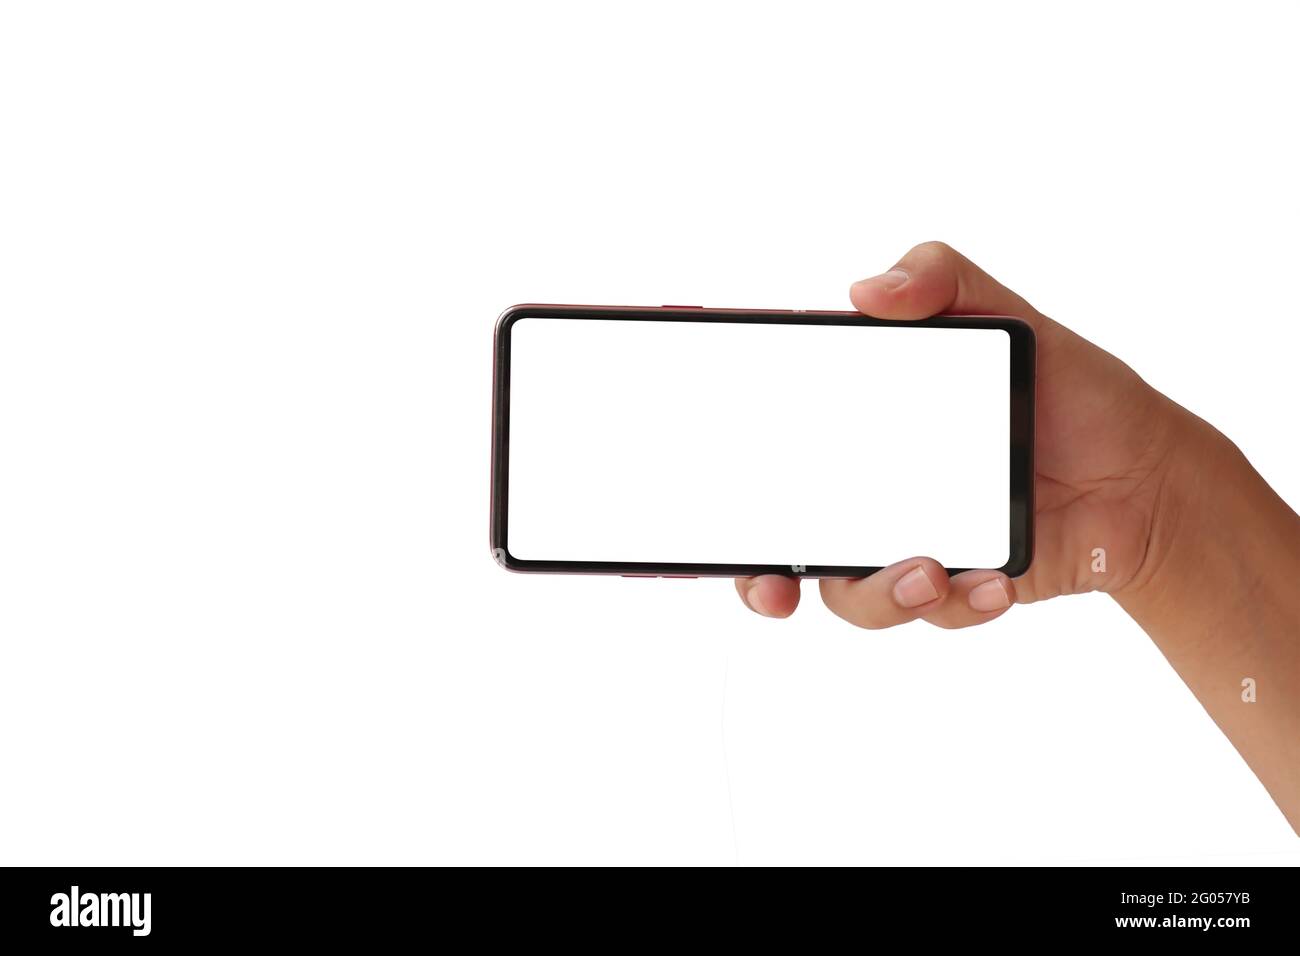 Tenez un téléphone avec un écran blanc isolé horizontalement sur un arrière-plan blanc avec le masque. Banque D'Images